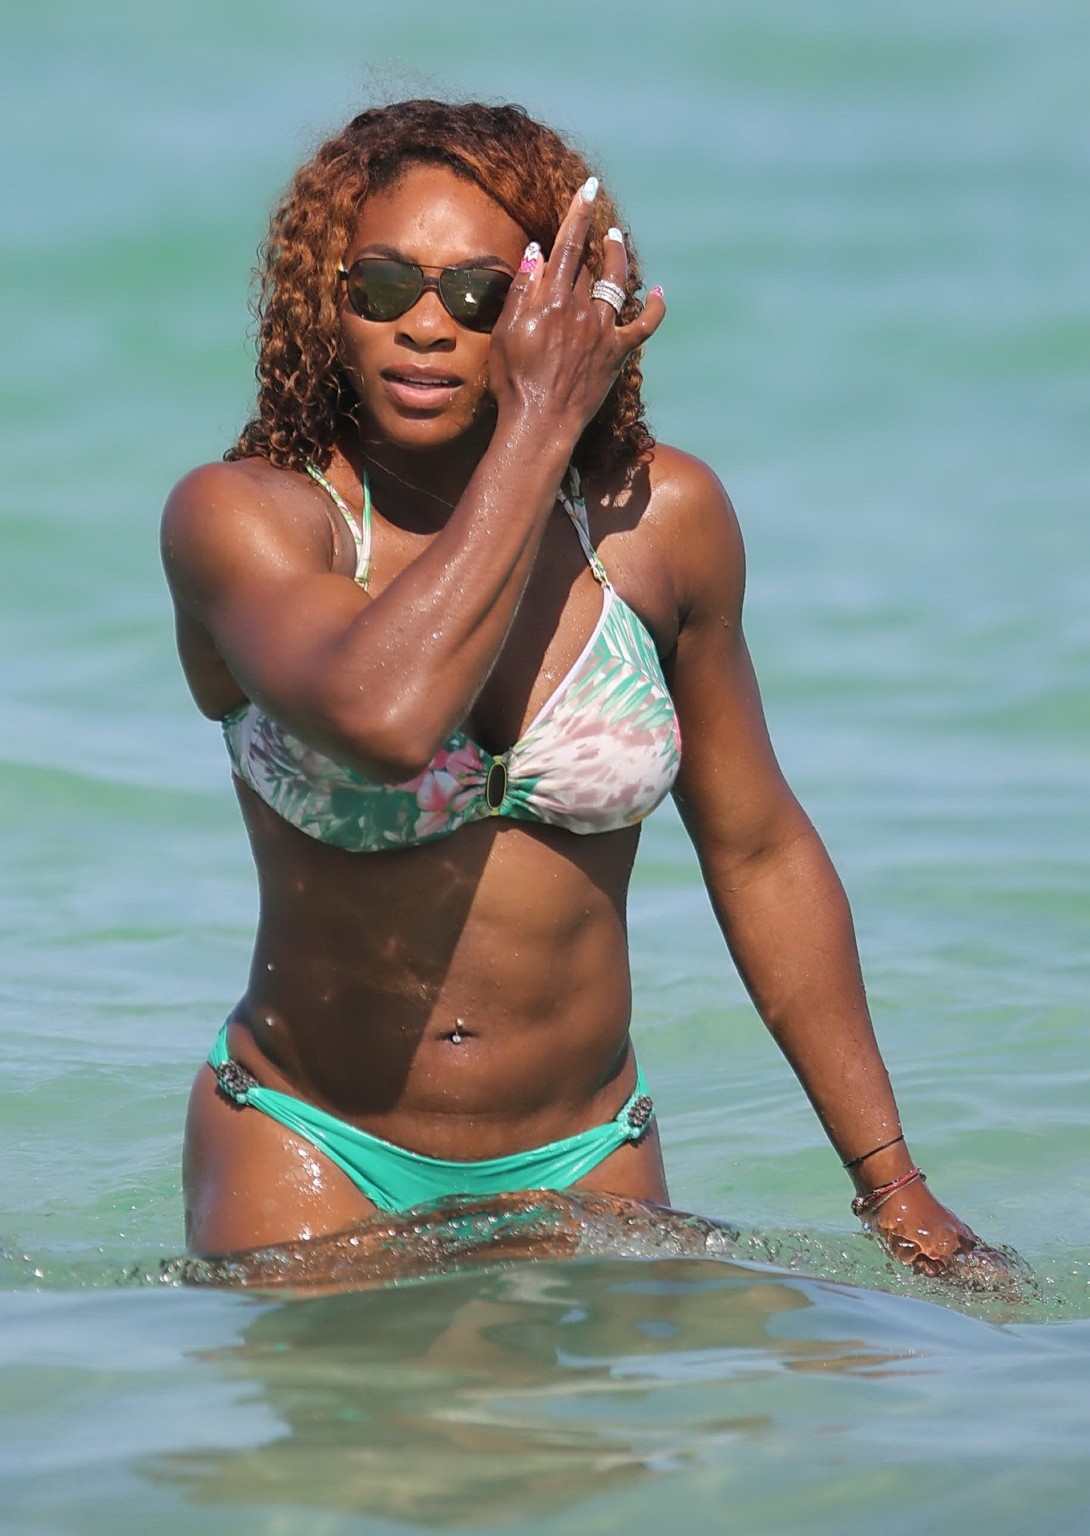 Serena williams che mostra le sue curve del bikini alla spiaggia in miami
 #75228646